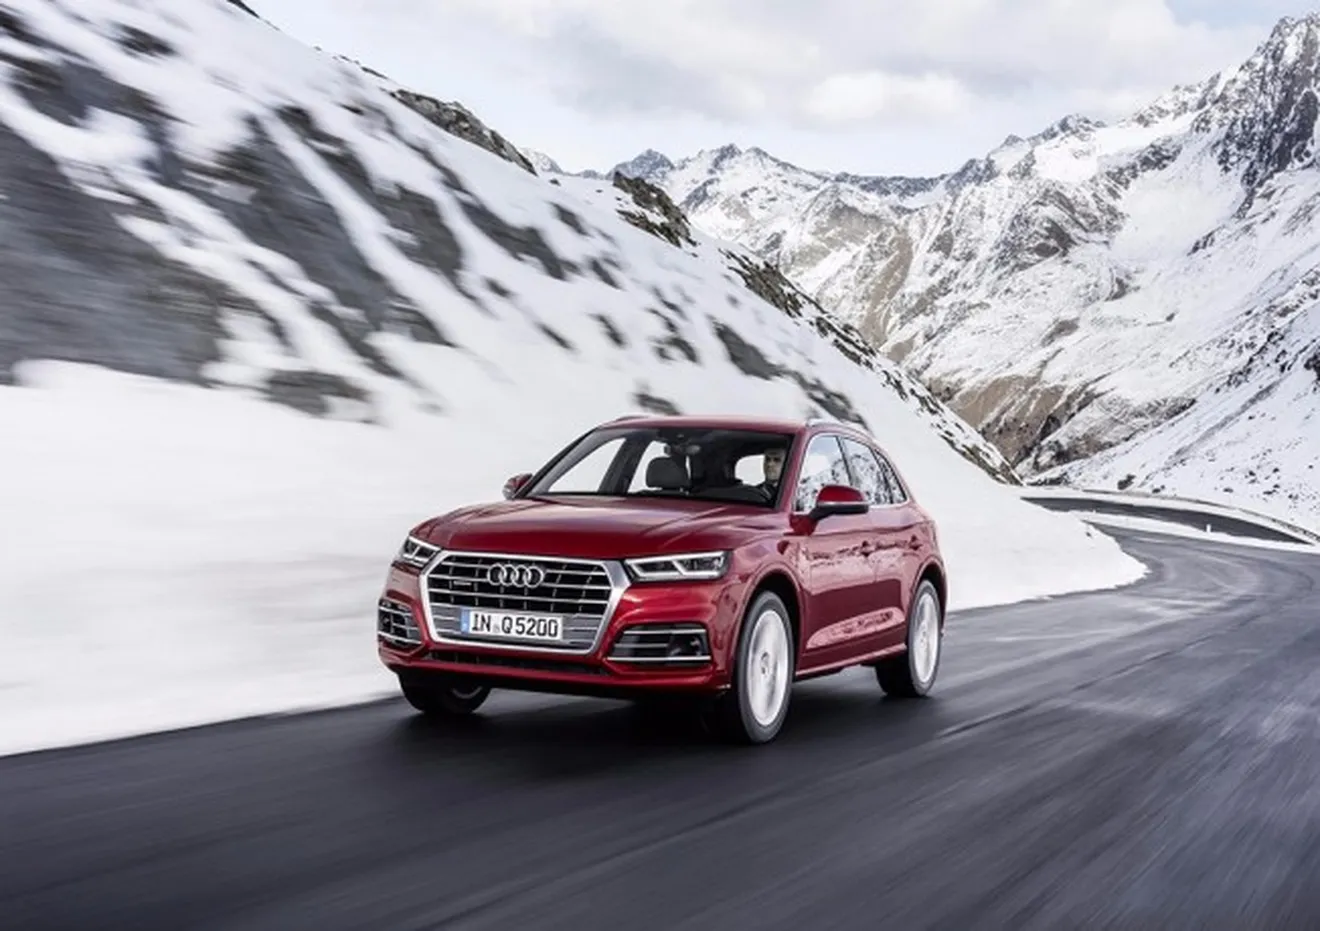 Audi fabrica 8 millones de vehículos con tracción quattro